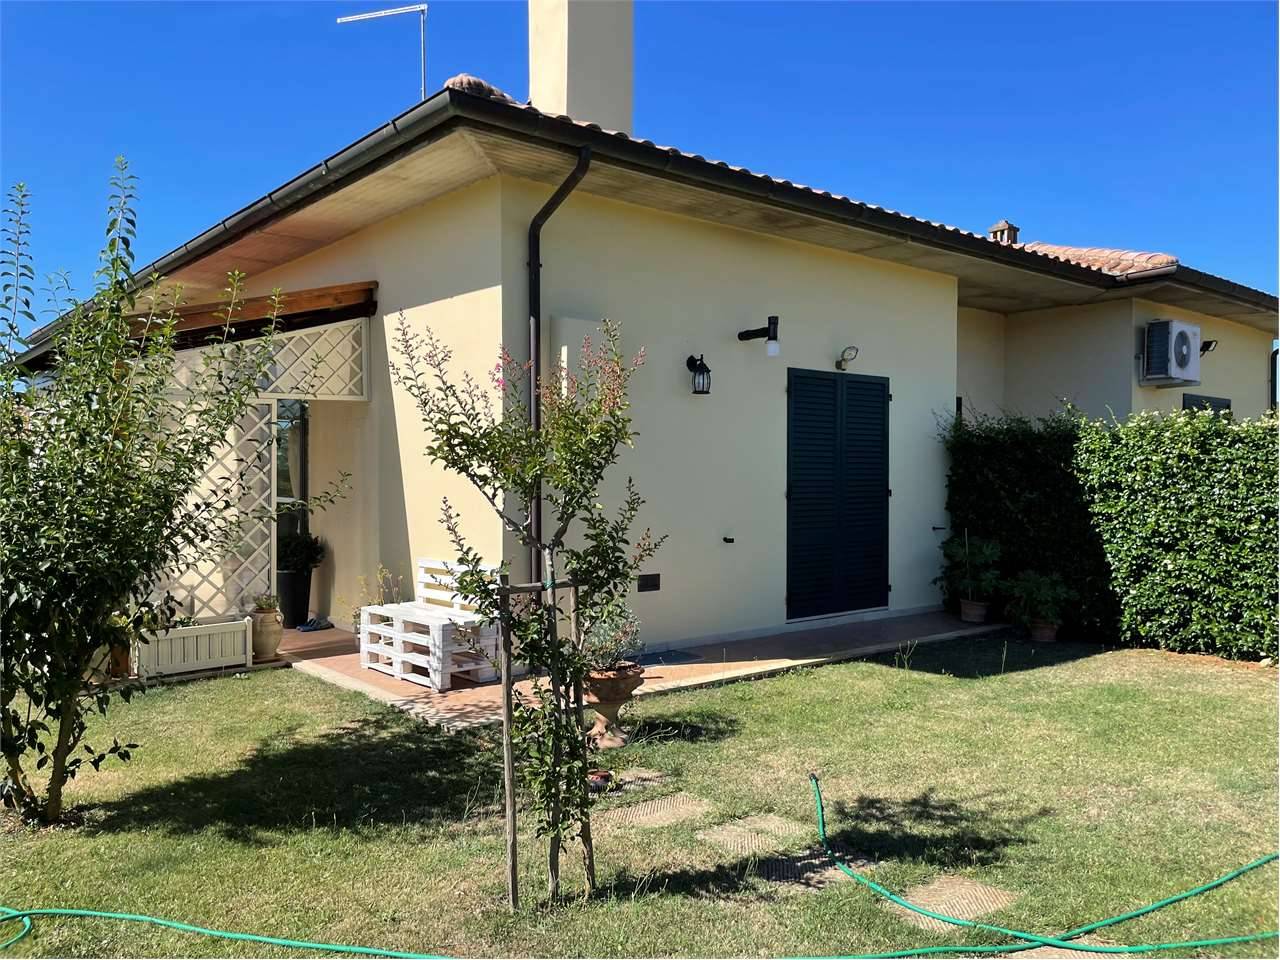 Casa Bi - Trifamiliare in Vendita a Lucignano Santa Maria